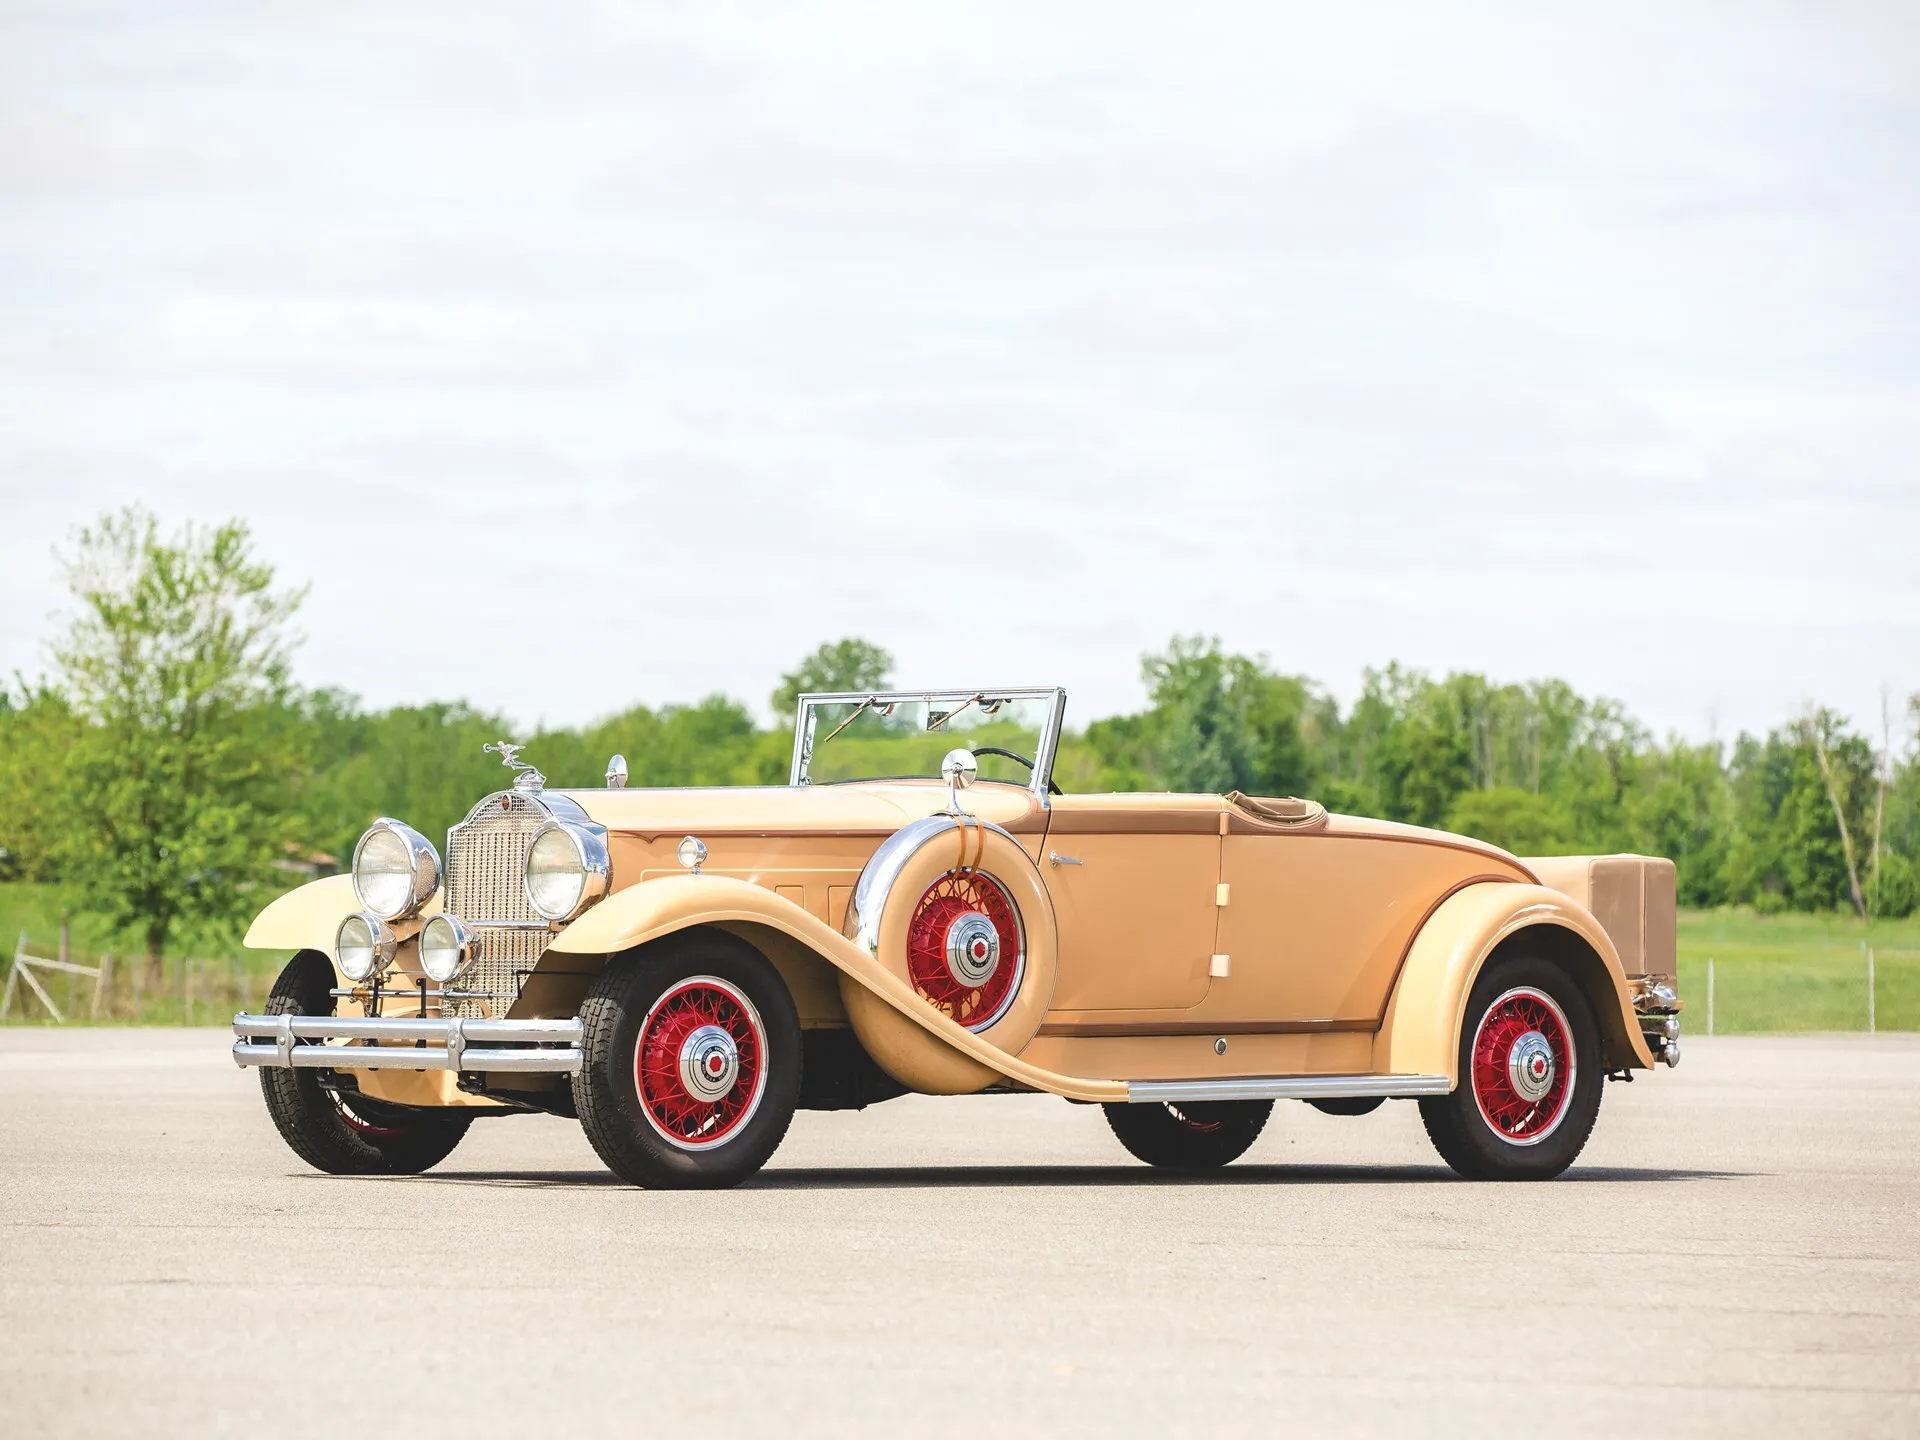 1931 Packard Deluxe Eight Convertible Coupe, Packard, Packard Eight